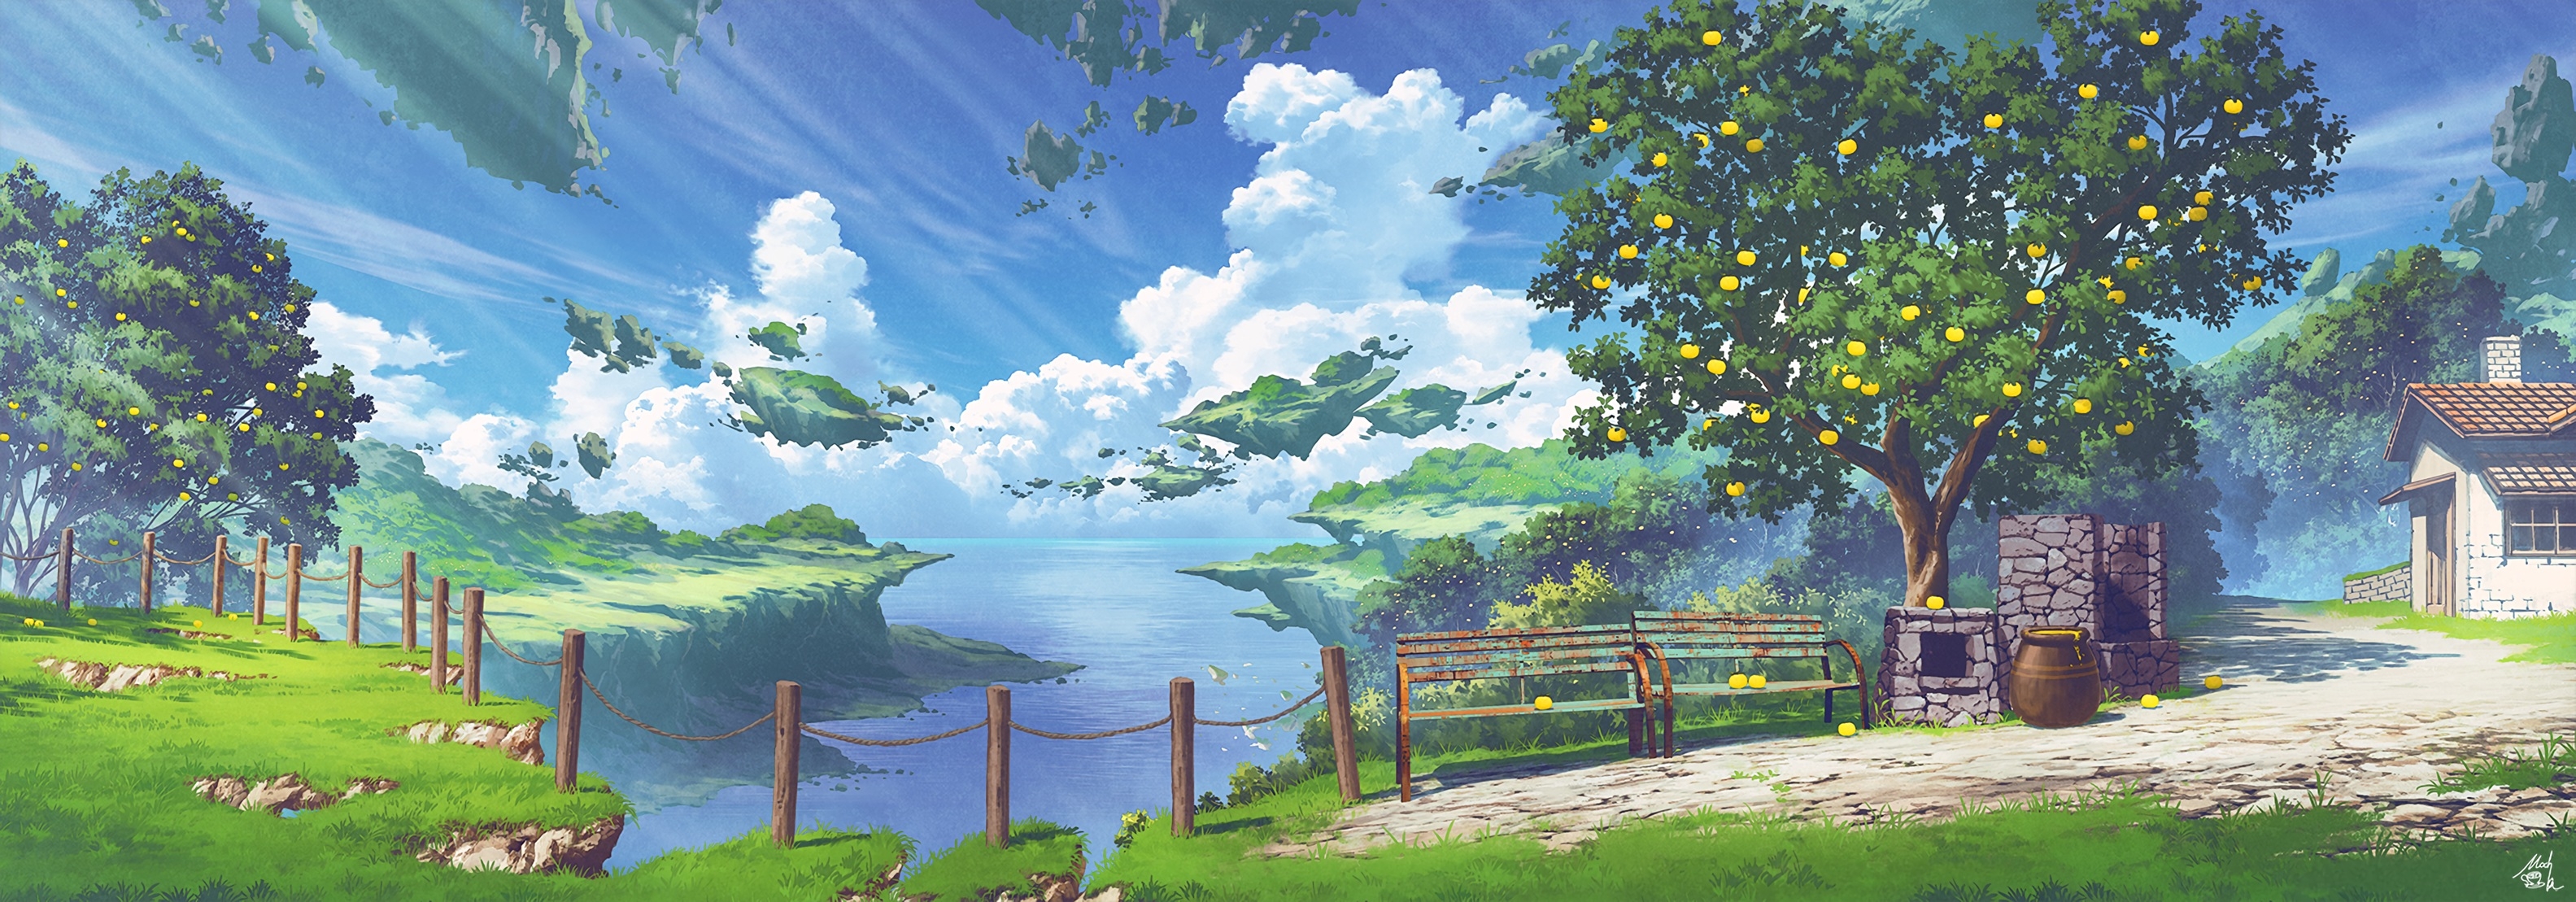 Free photo Anime landscape